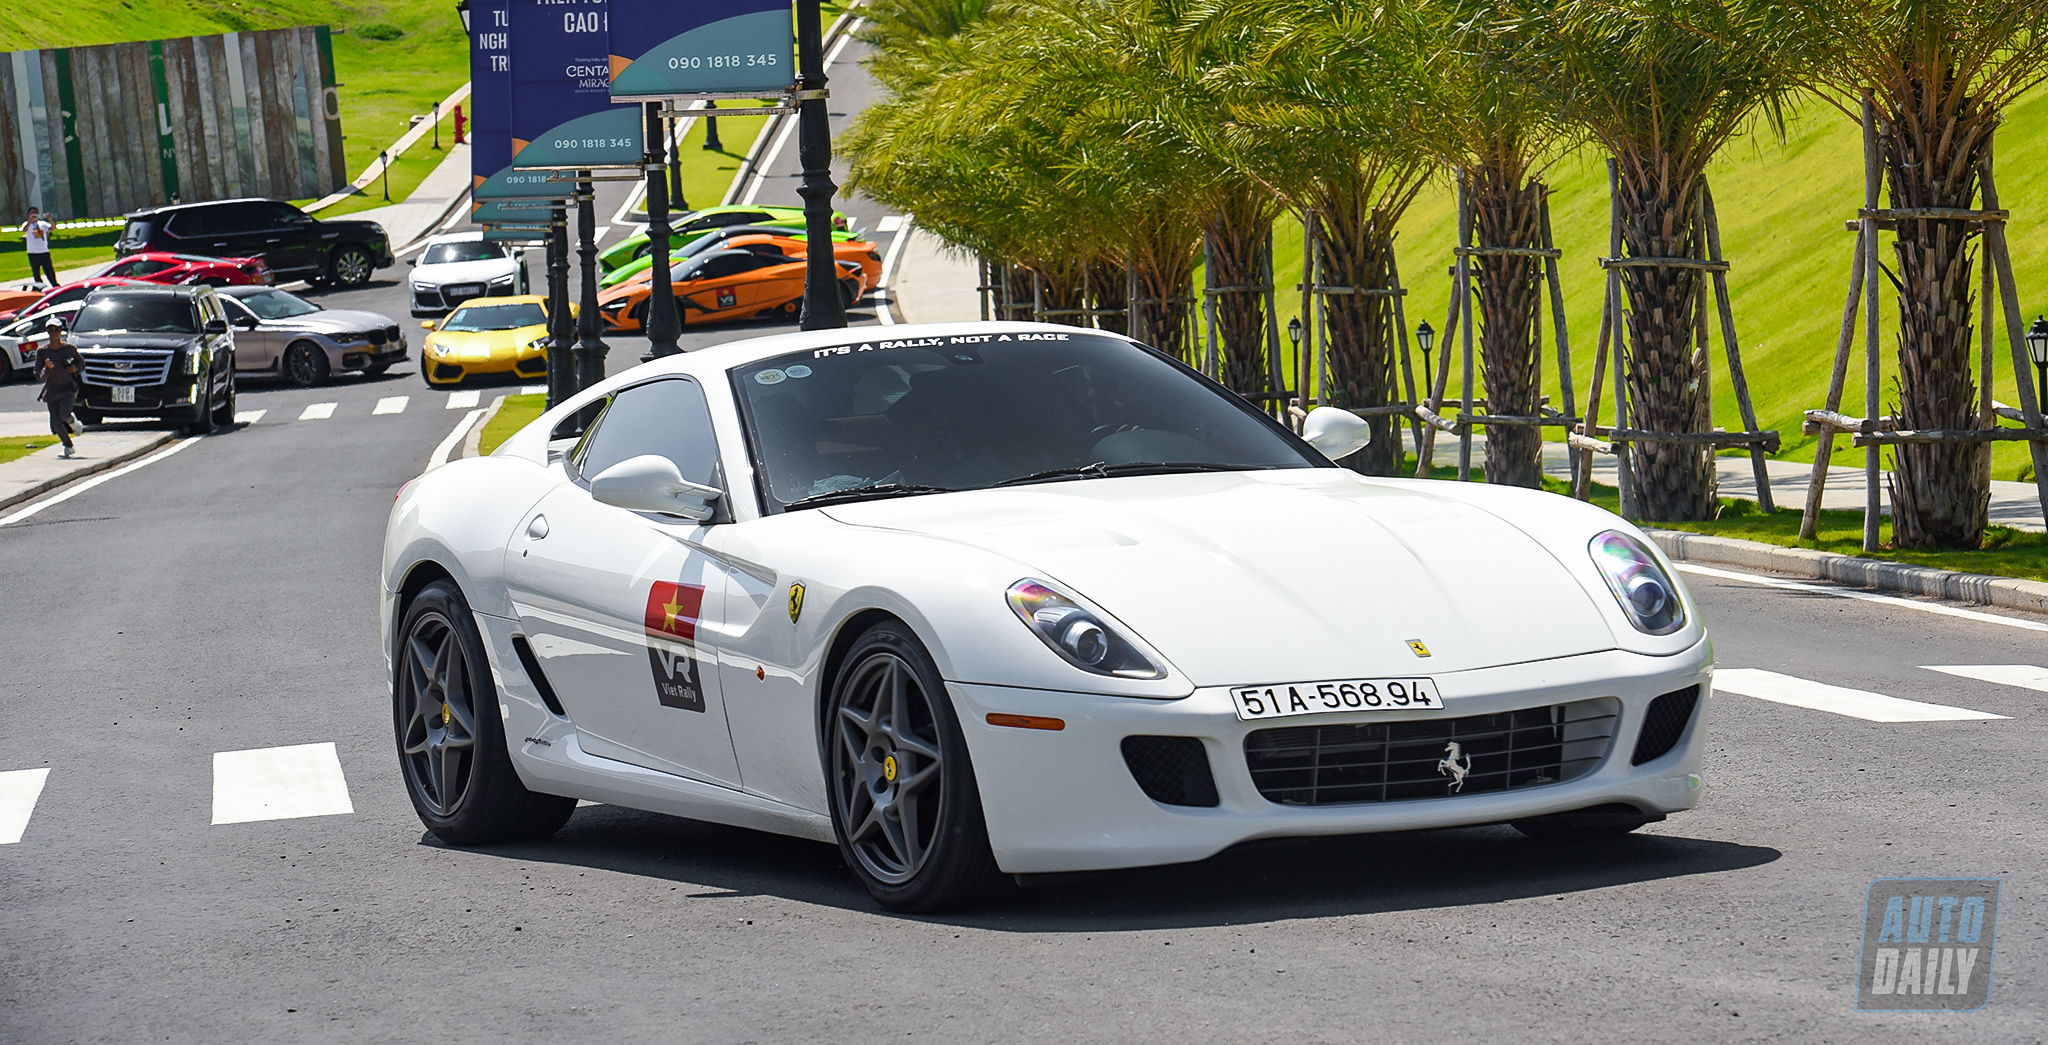 Ông Đặng Lê Nguyên Vũ mua tiếp 2 siêu xe Ferrari từng bán đi 3 năm trước